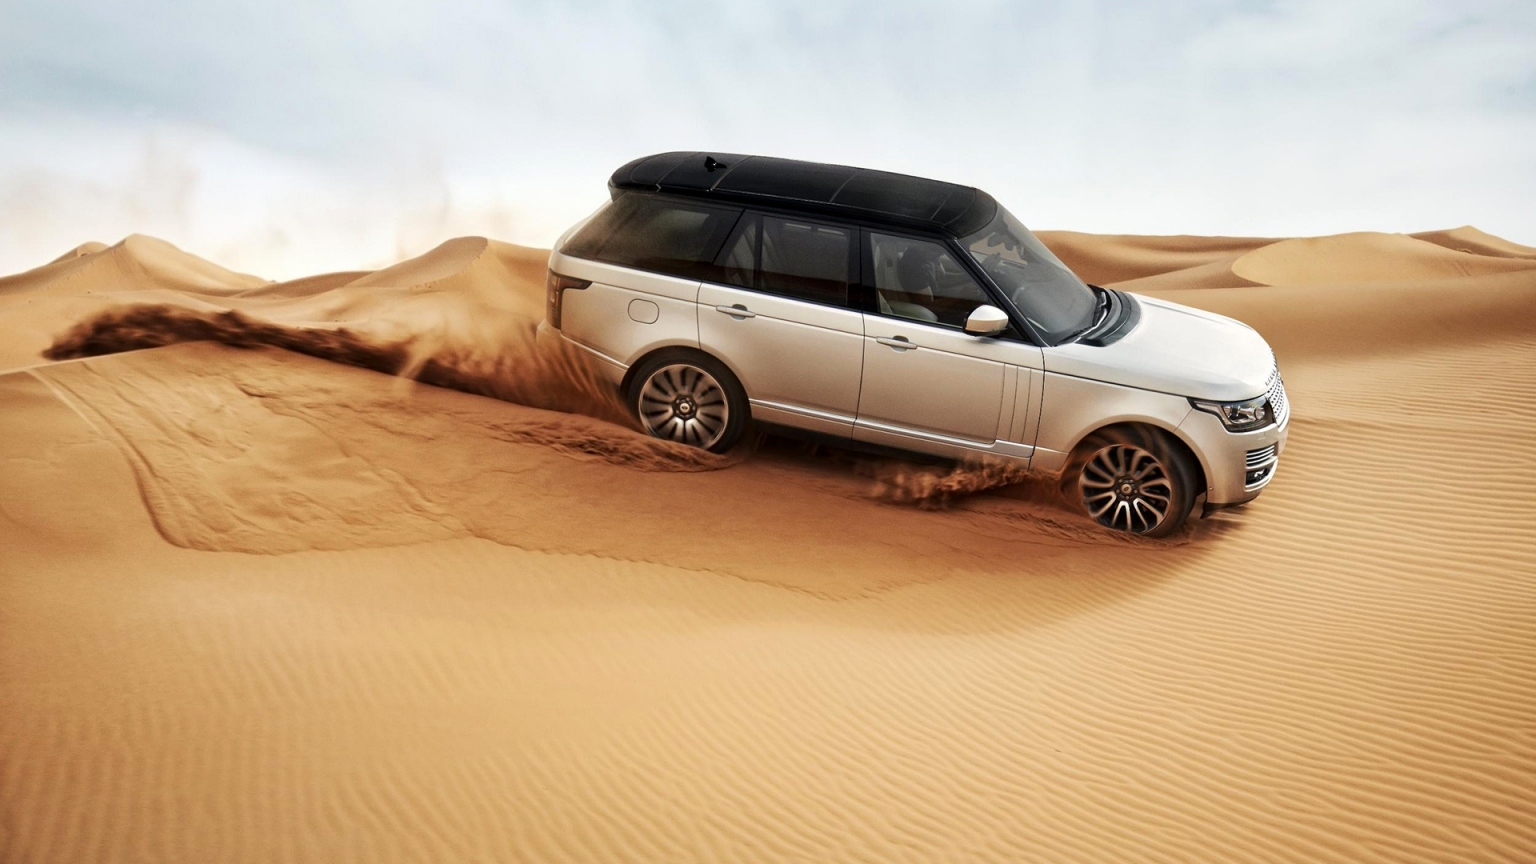 Range Rover in the Desert for 1536 x 864 HDTV resolution